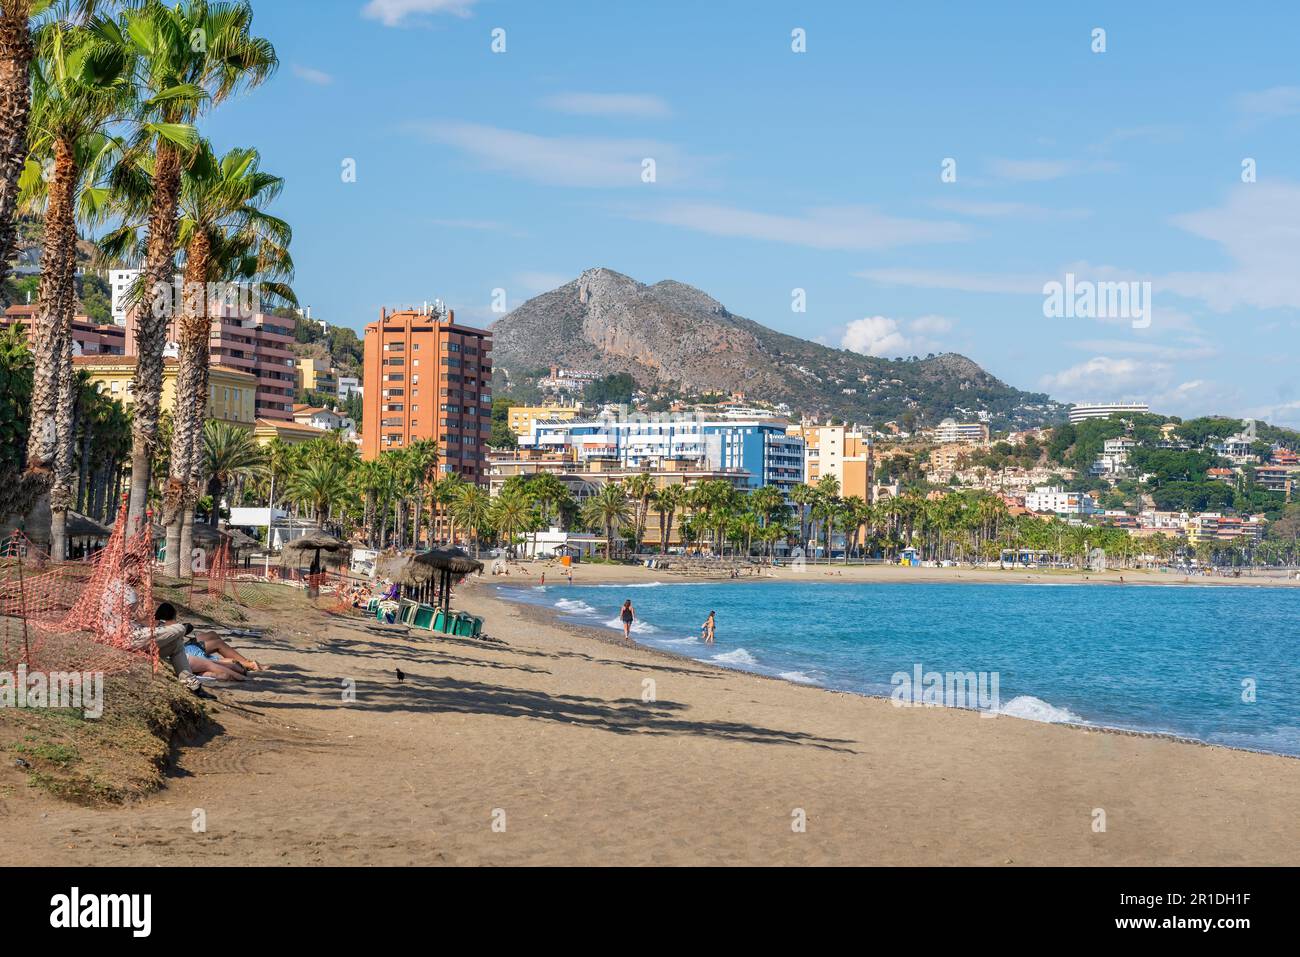 La Malagueta Beach - Malaga, Andalusia, Spain Stock Photo